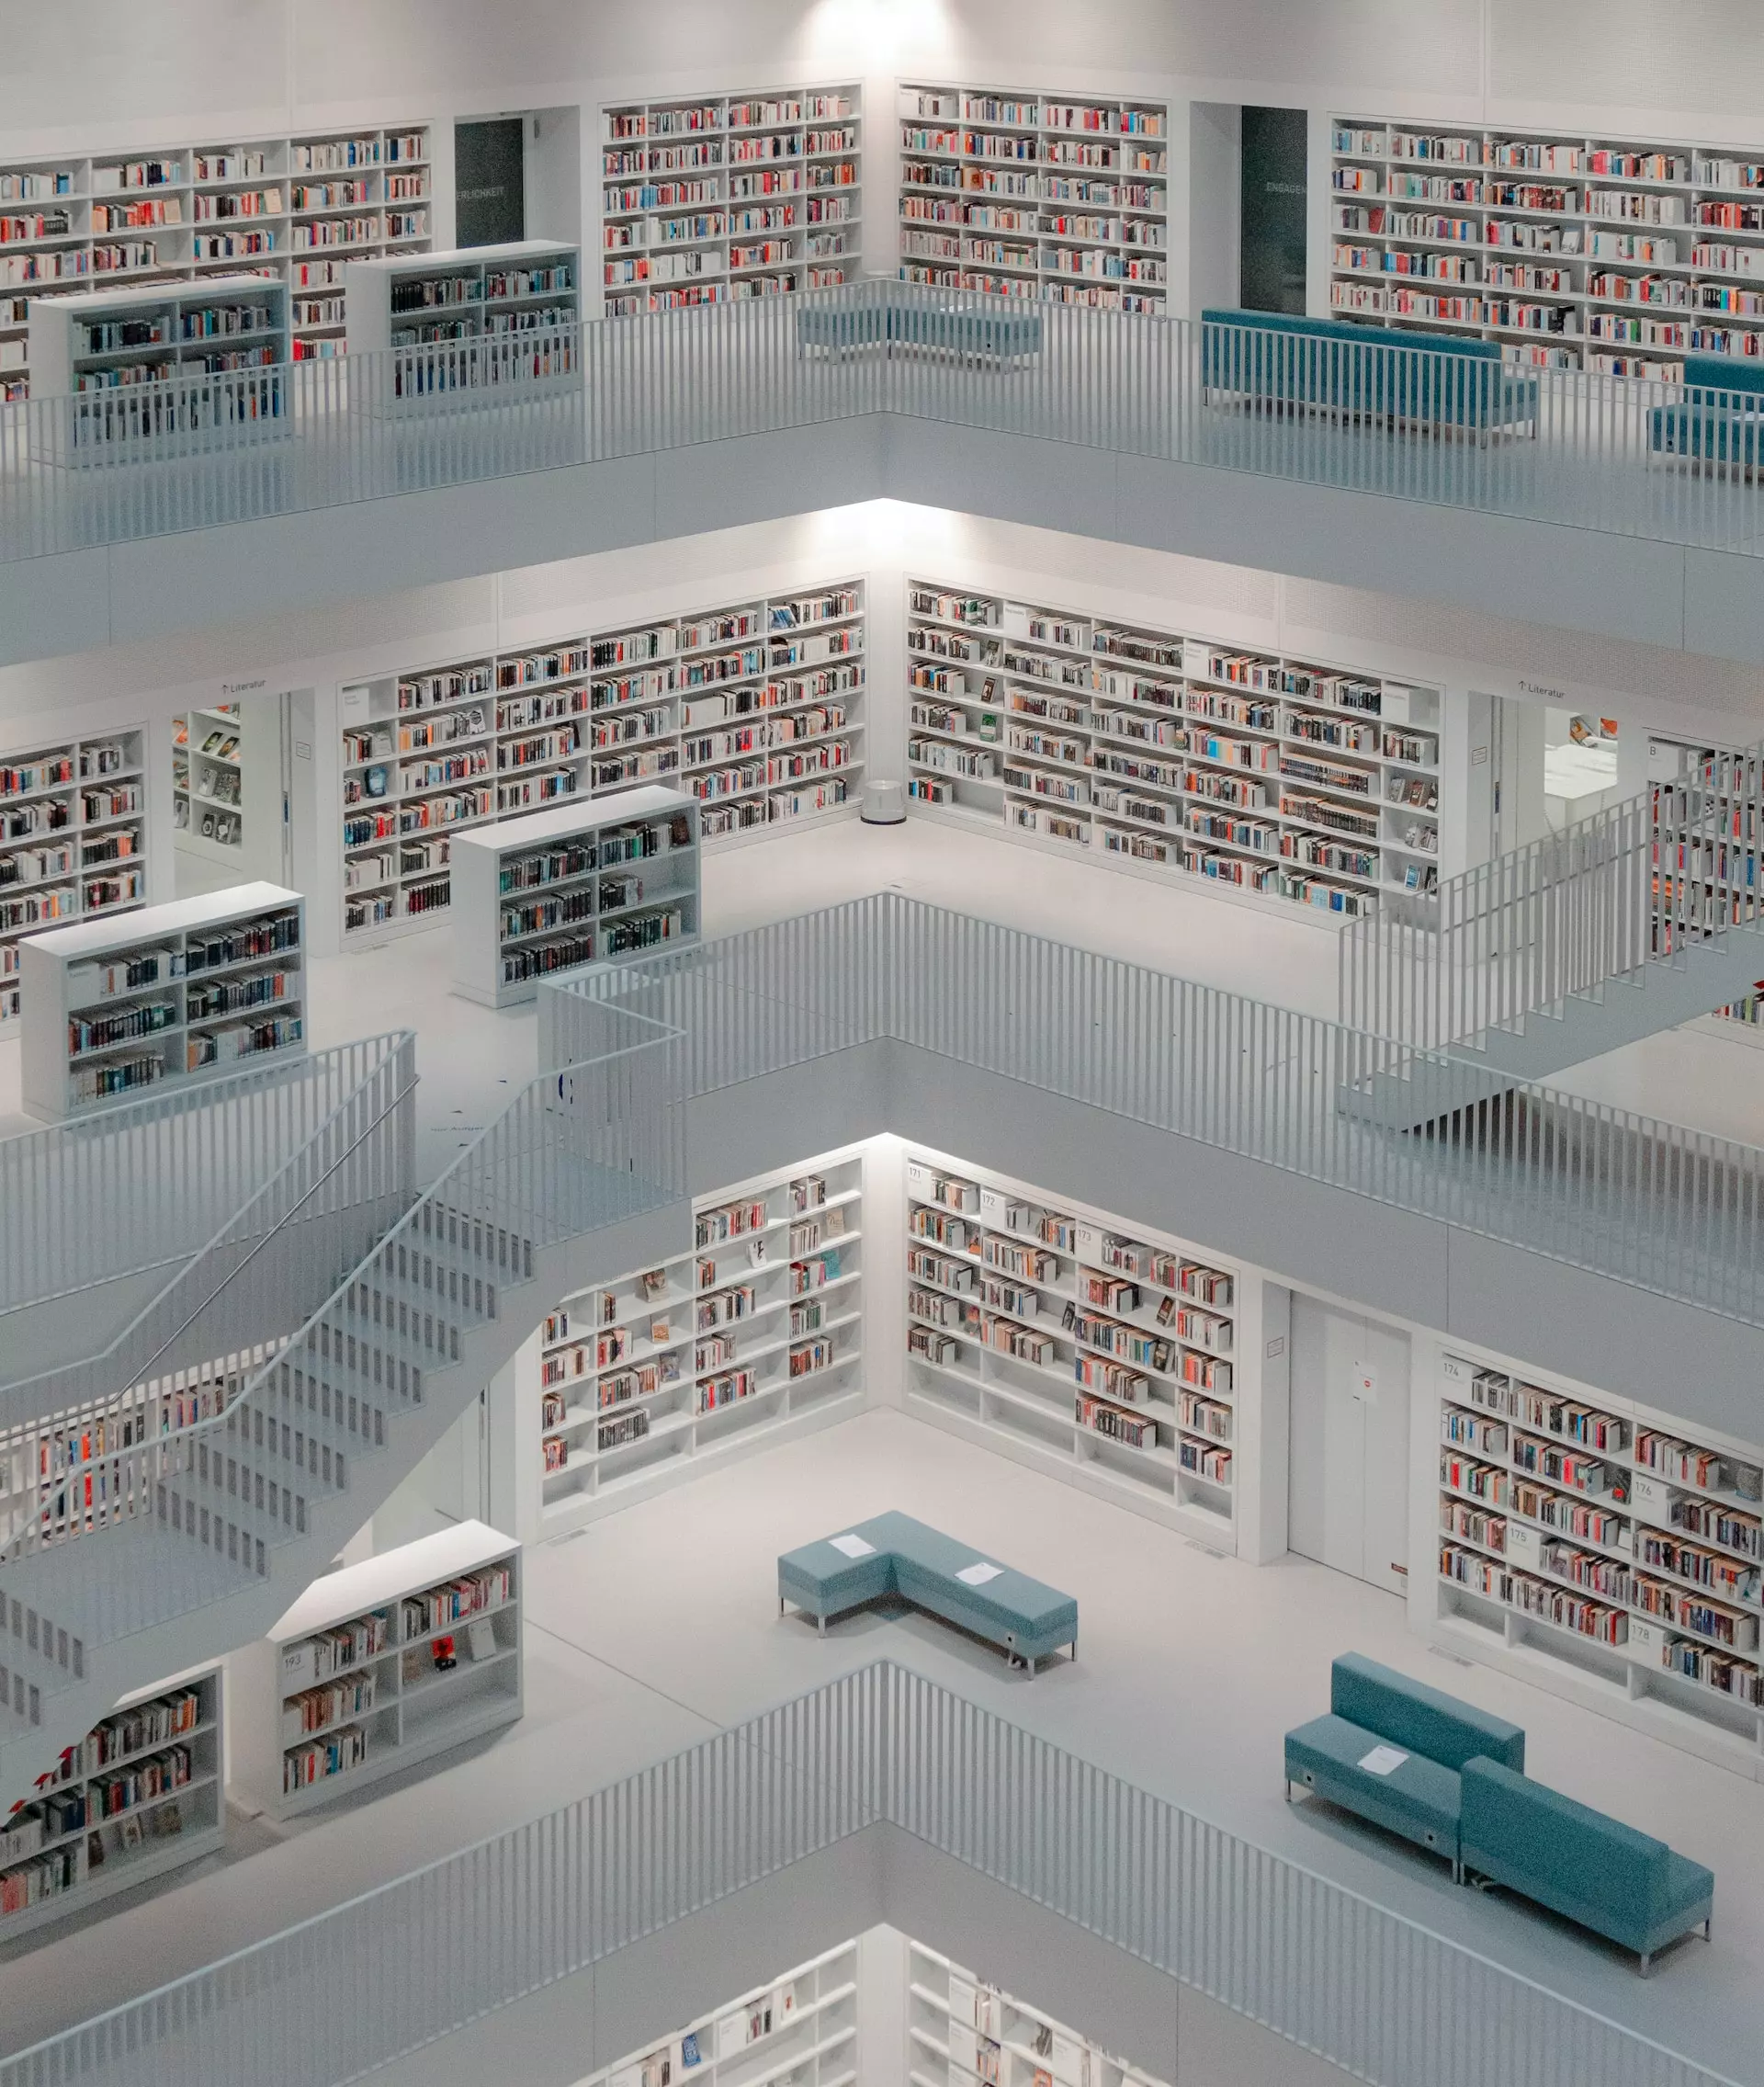 Multiple floors of bookshelves in Stuttgart City Library